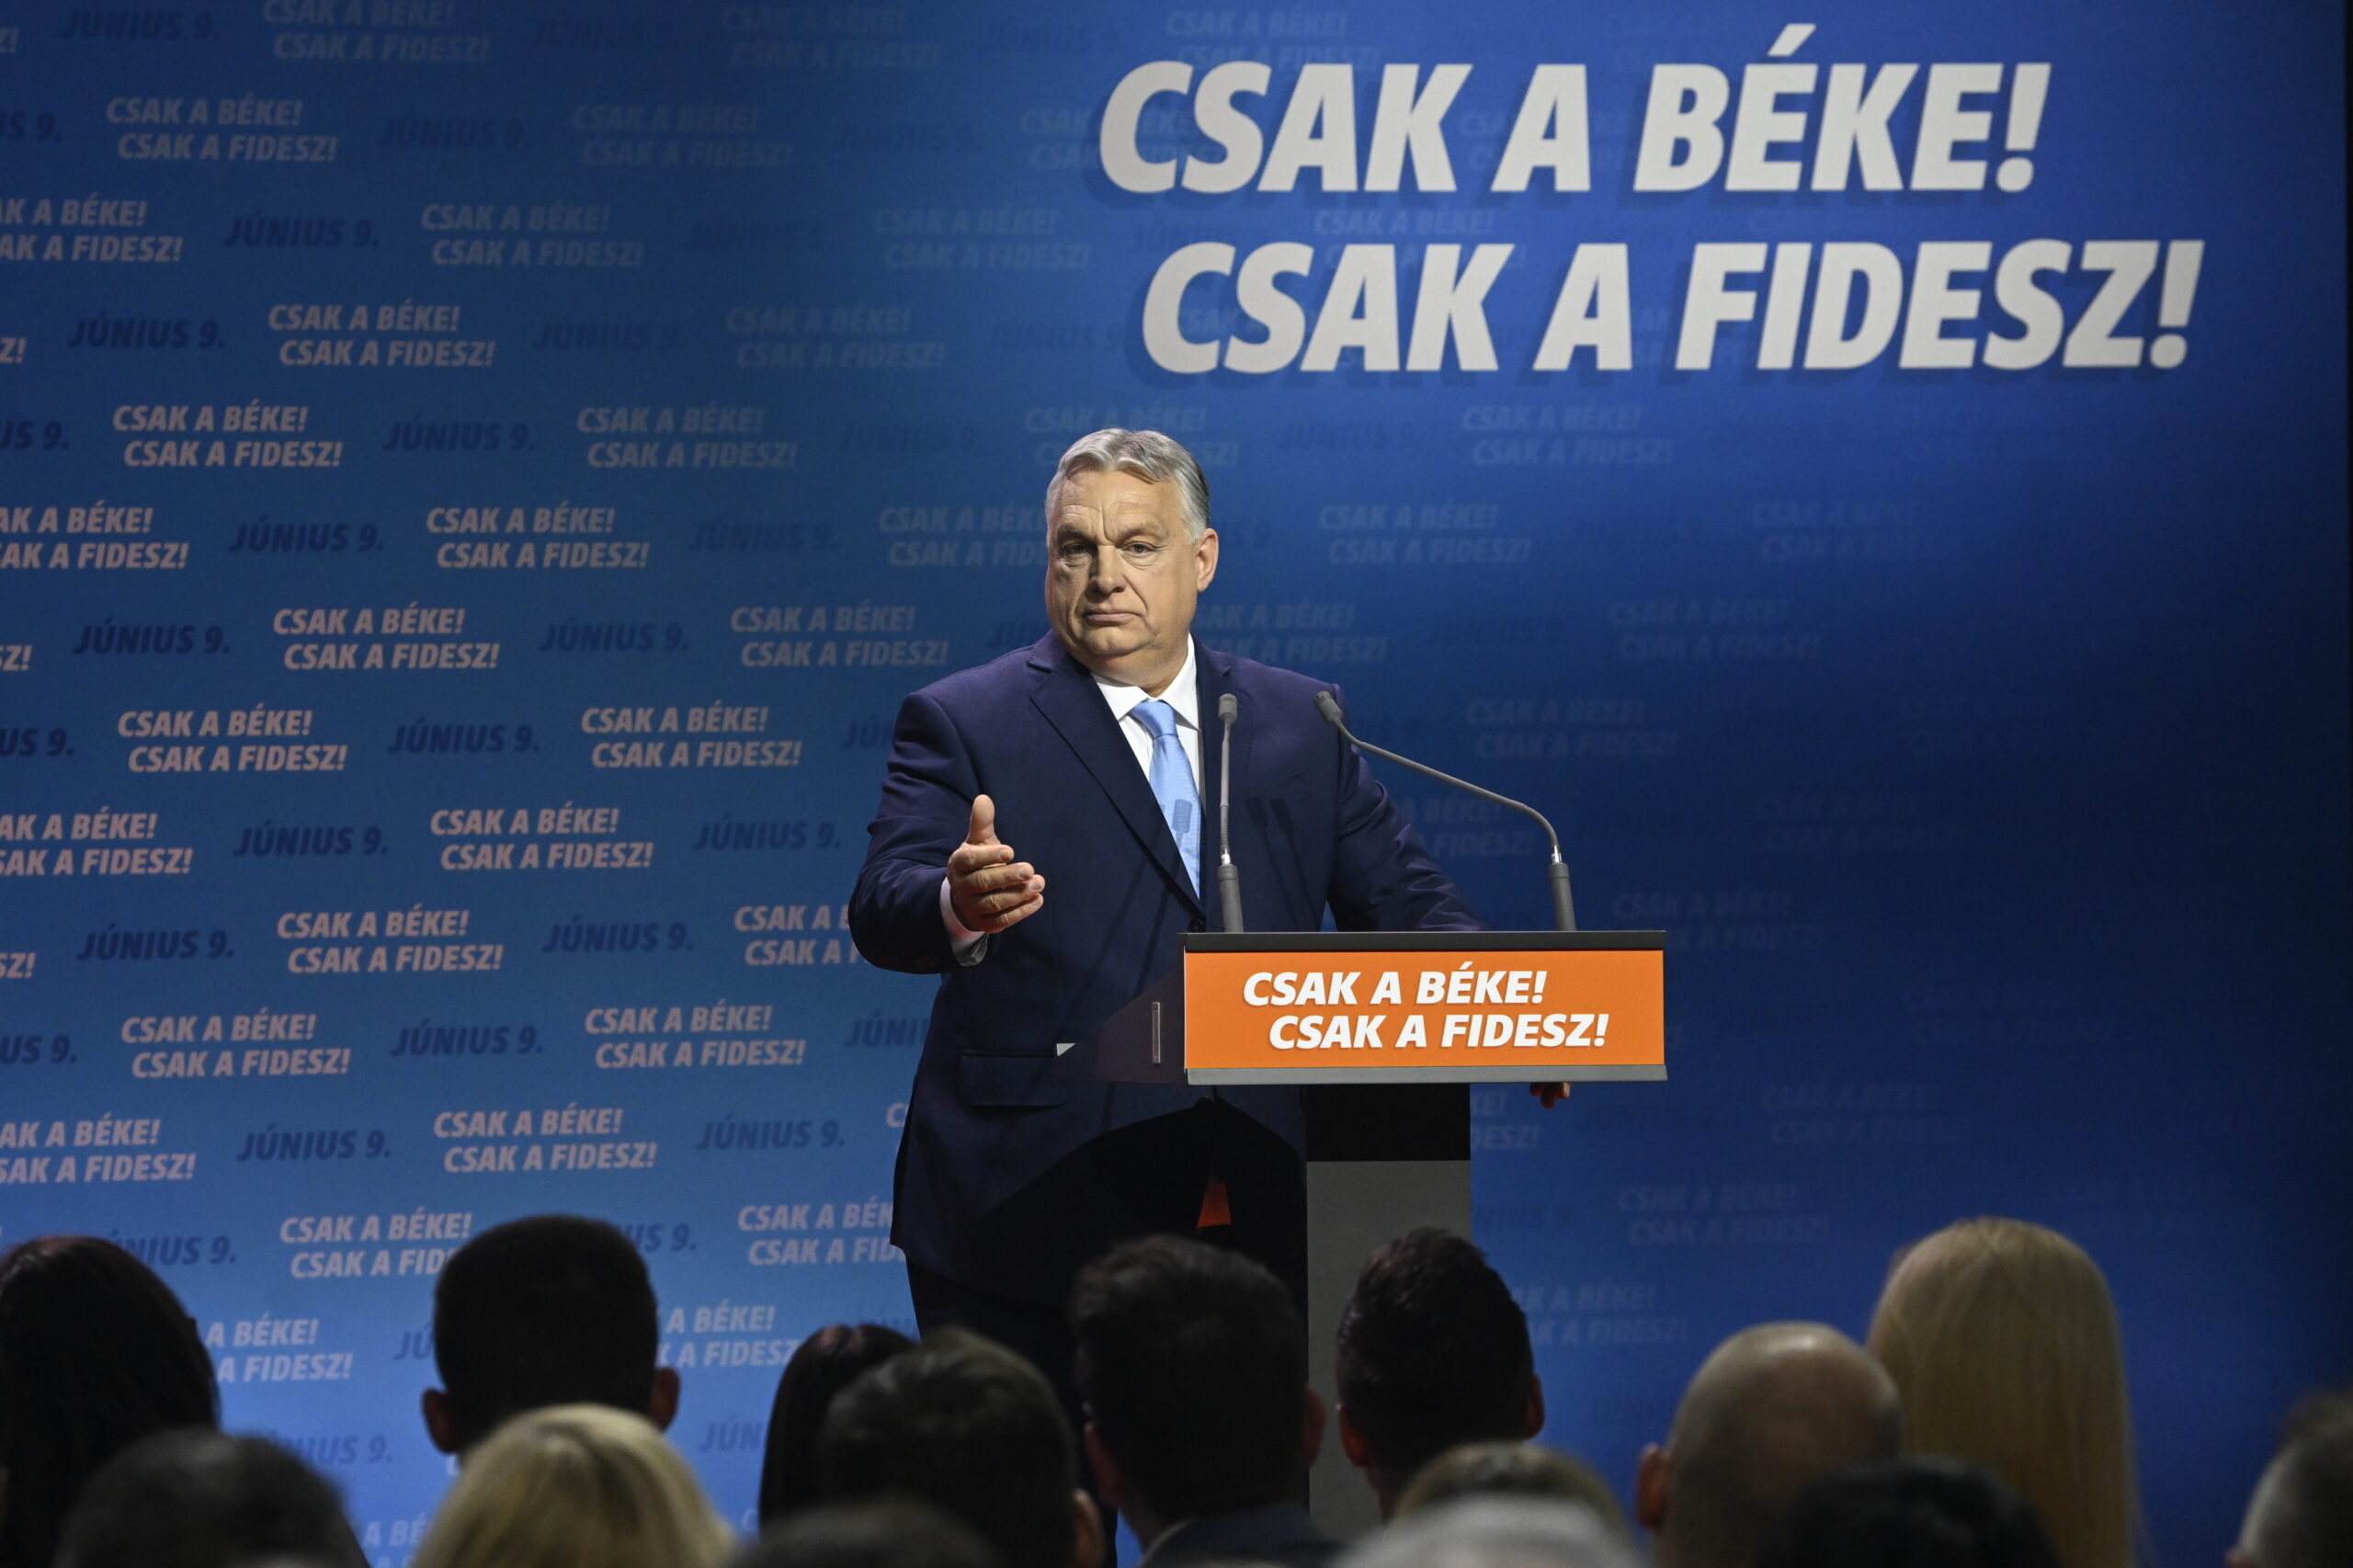 Halálos ítéletet küldtek Orbán Viktornak, bíróság előtt kell felelniük